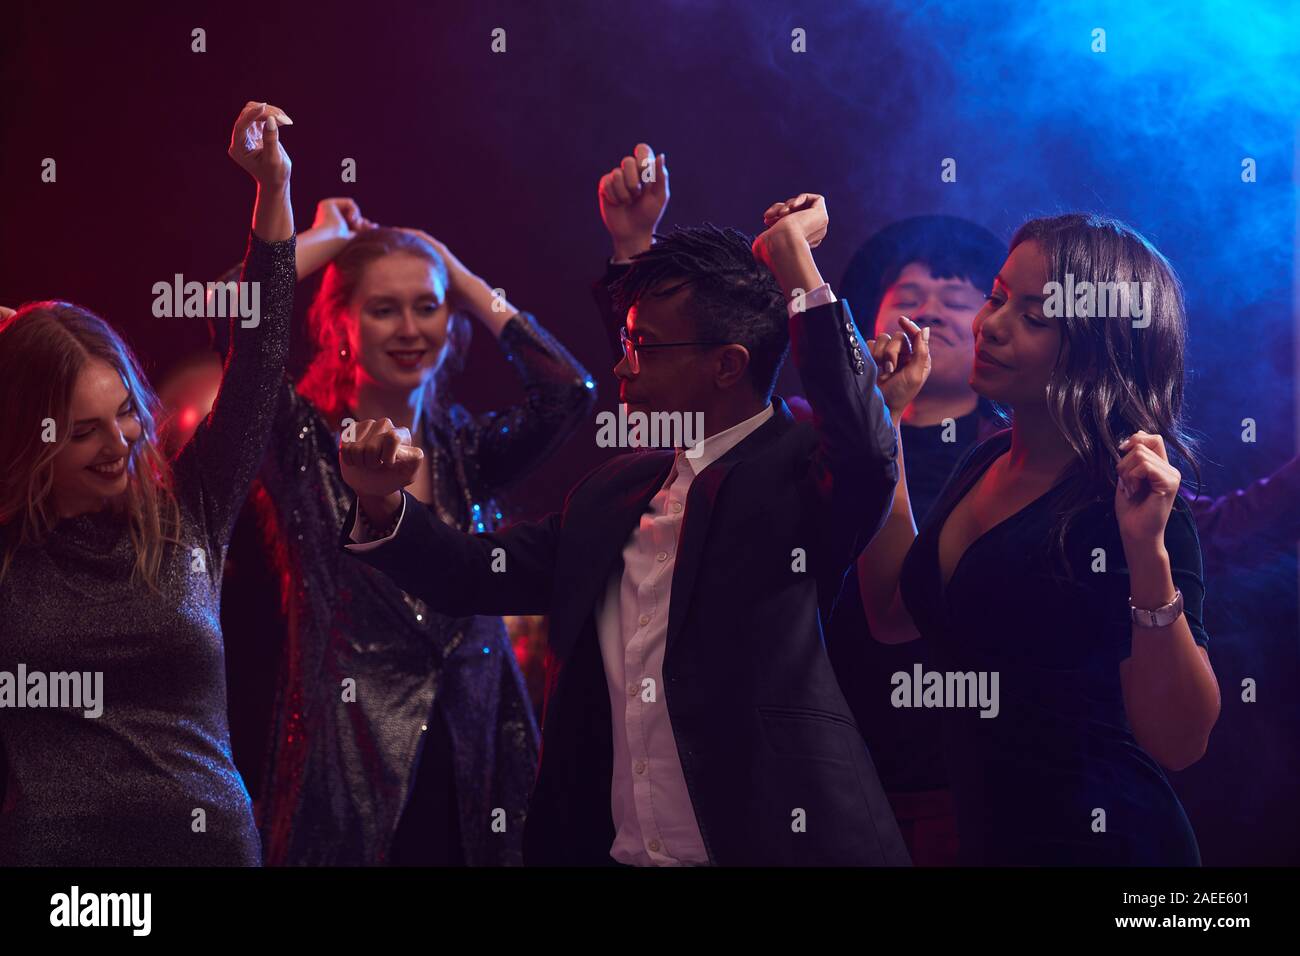 Groupe multi-ethnique de jeunes gens à la mode la danse de smoky discothèque, Afro-américain en premier plan, copy space Banque D'Images